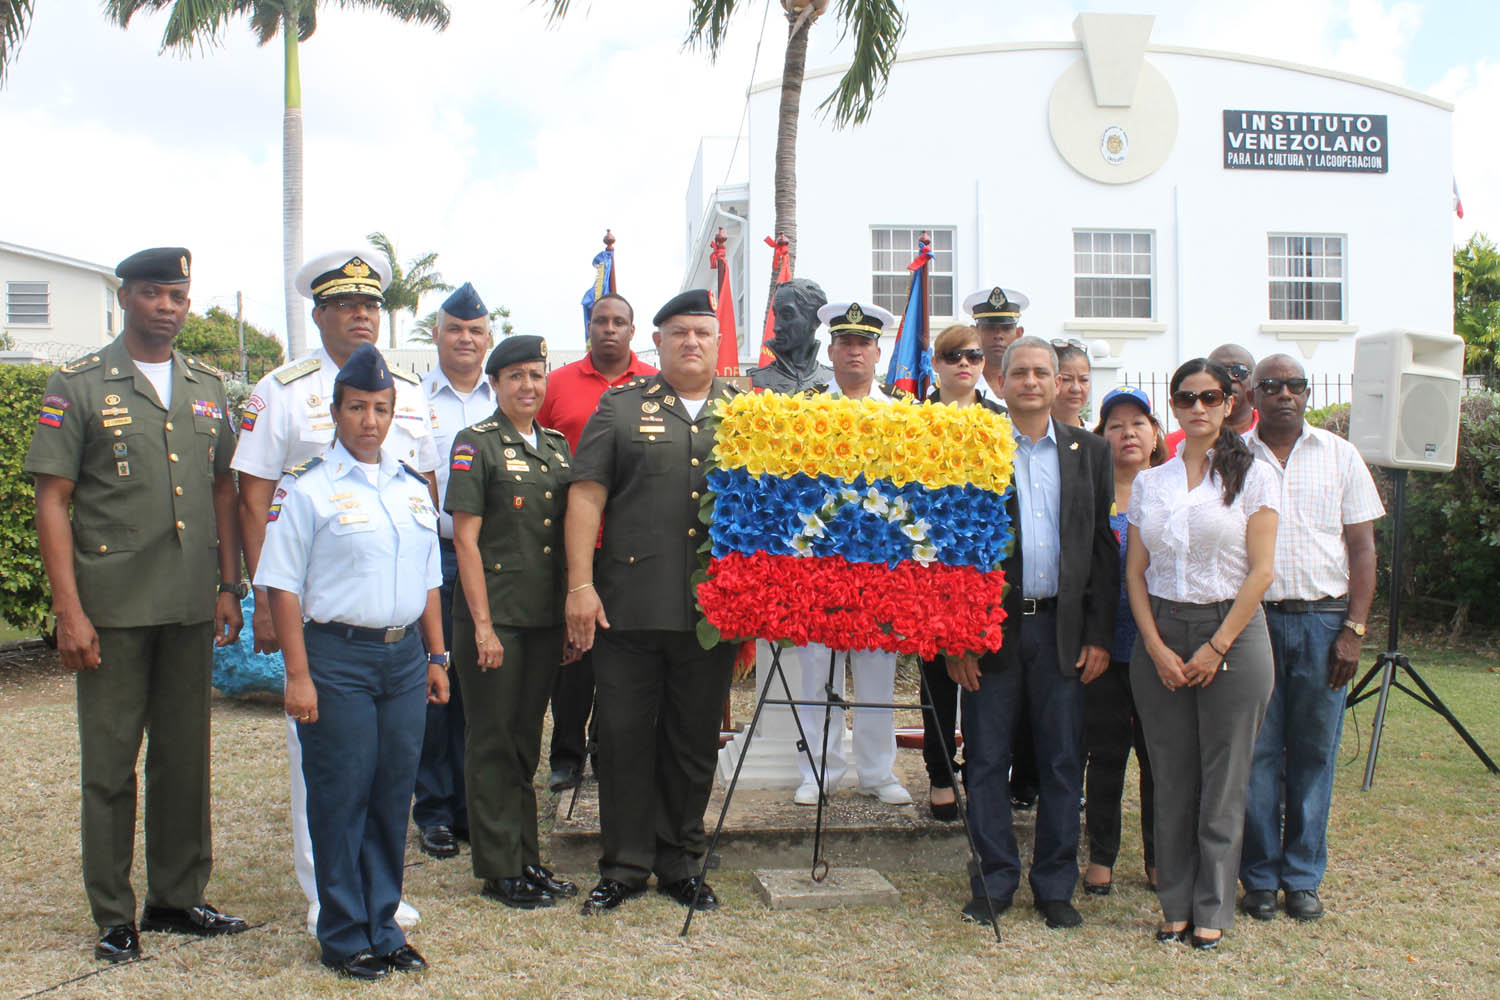 Los actos se hicieron en el Instituto Venezolano para la Cultura y la Cooperación en Barbados.